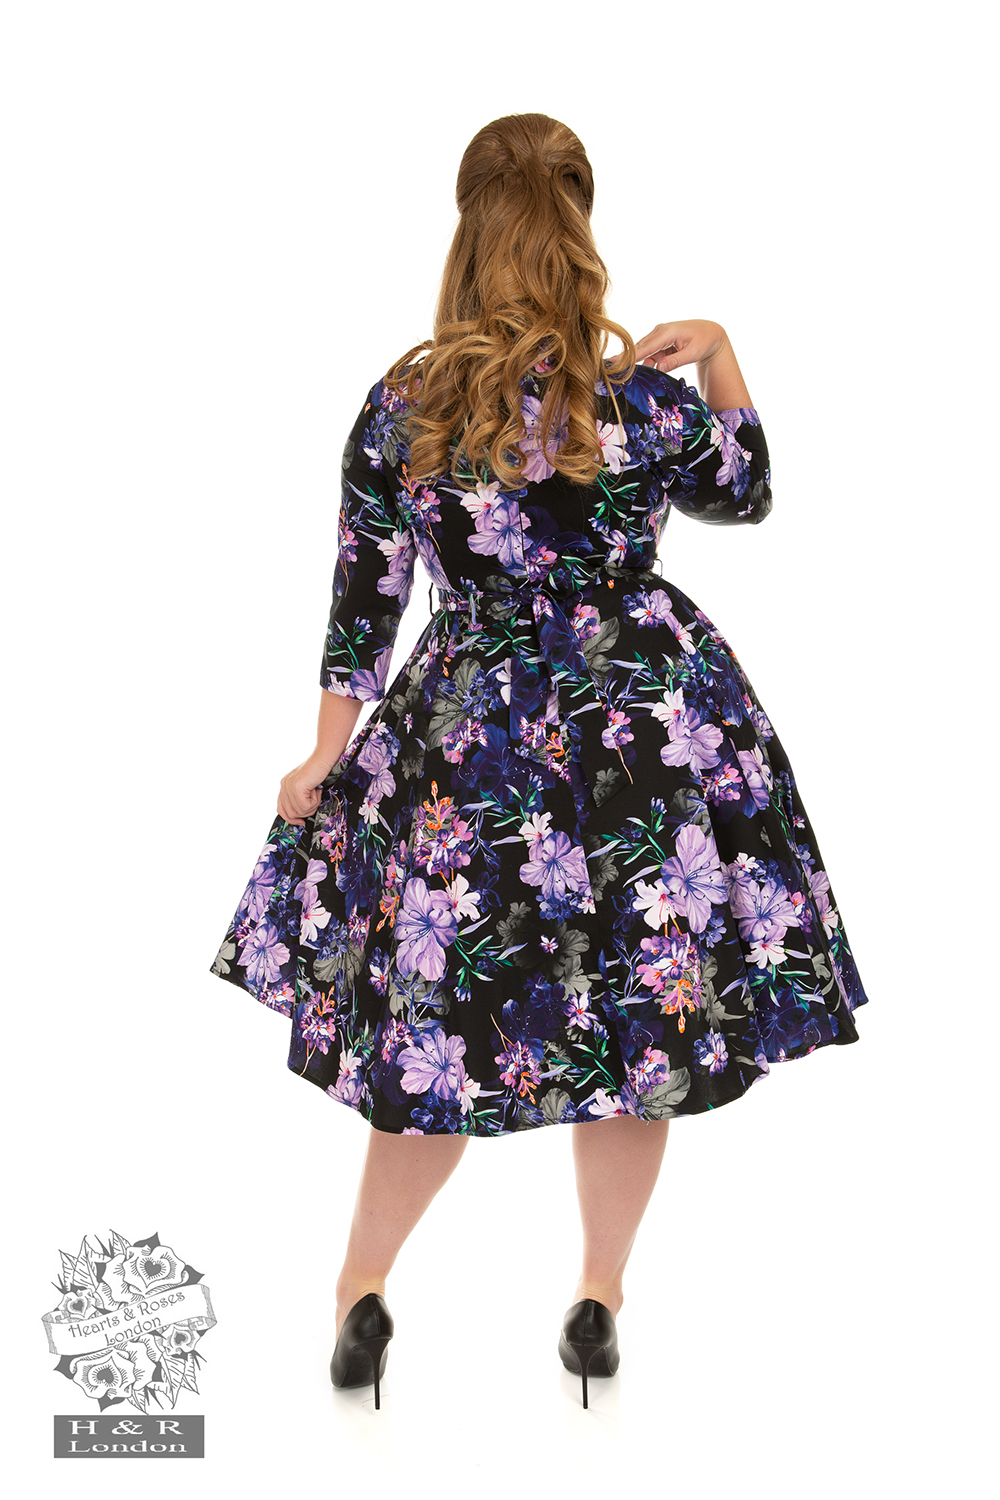 Faye Floral Swing Dress in Plus Size